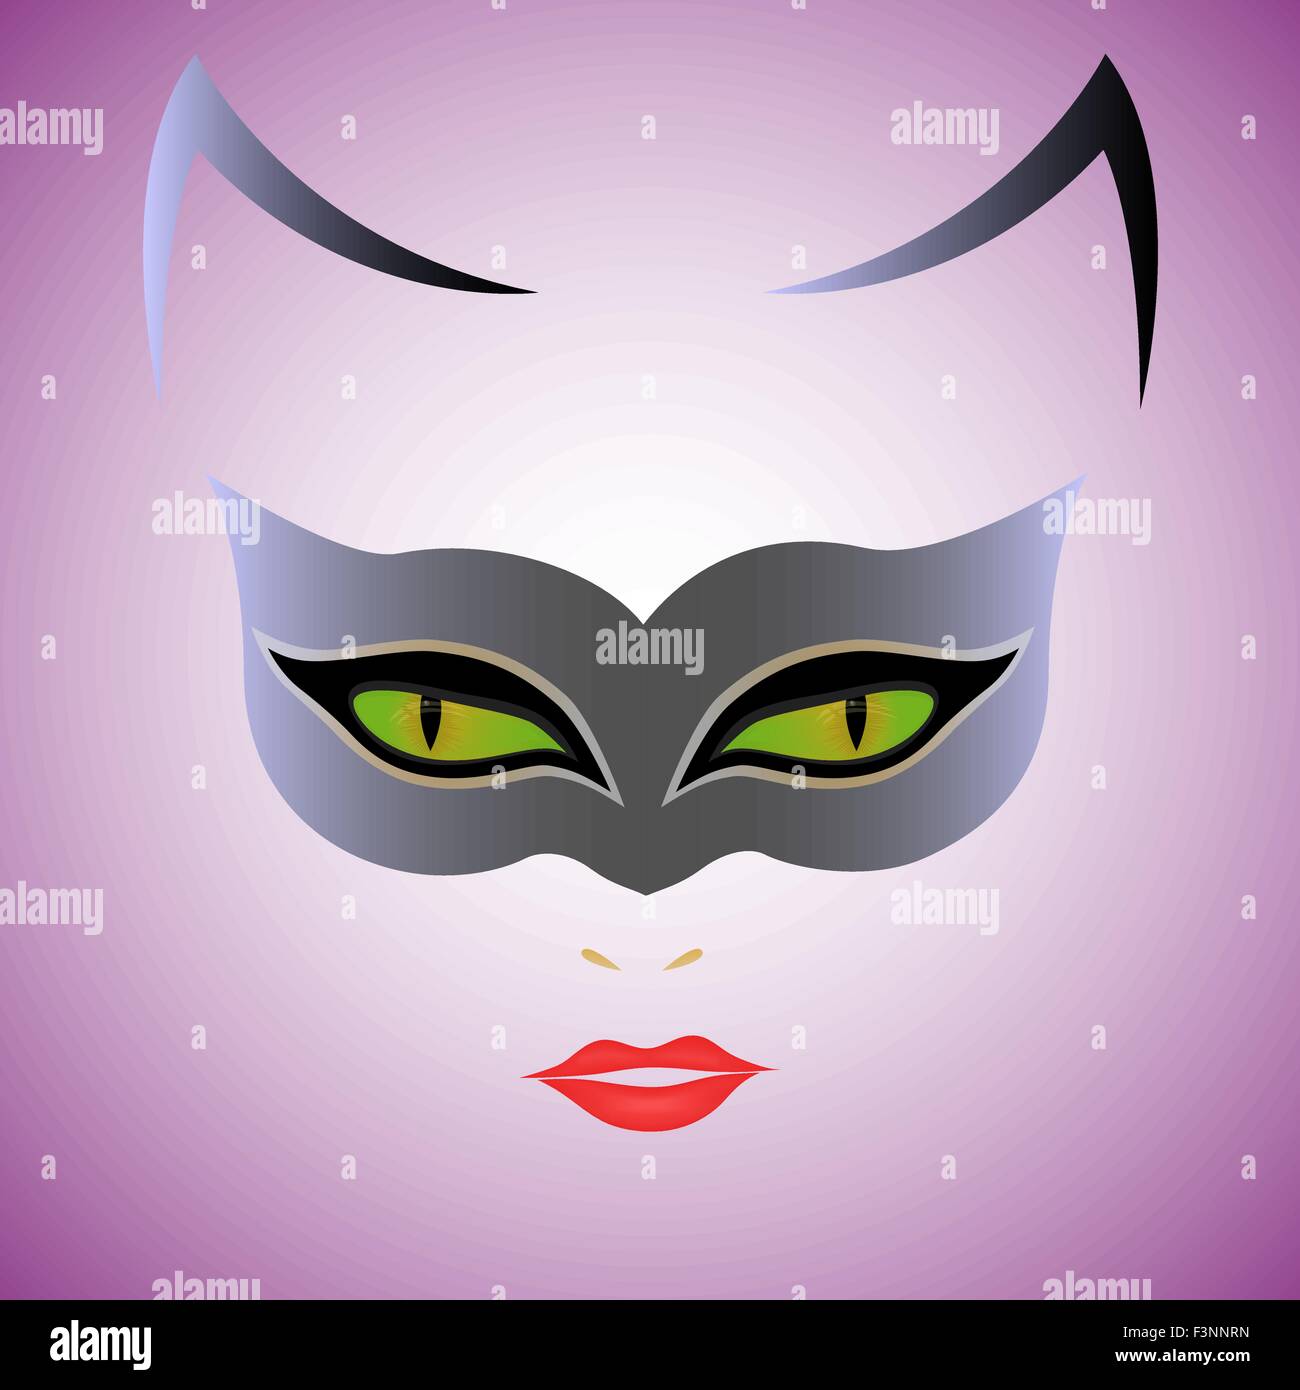 Frau Katze mit grünen Augen in der Maske auf violettem Hintergrund, Handzeichnung Vektor-illustration Stock Vektor